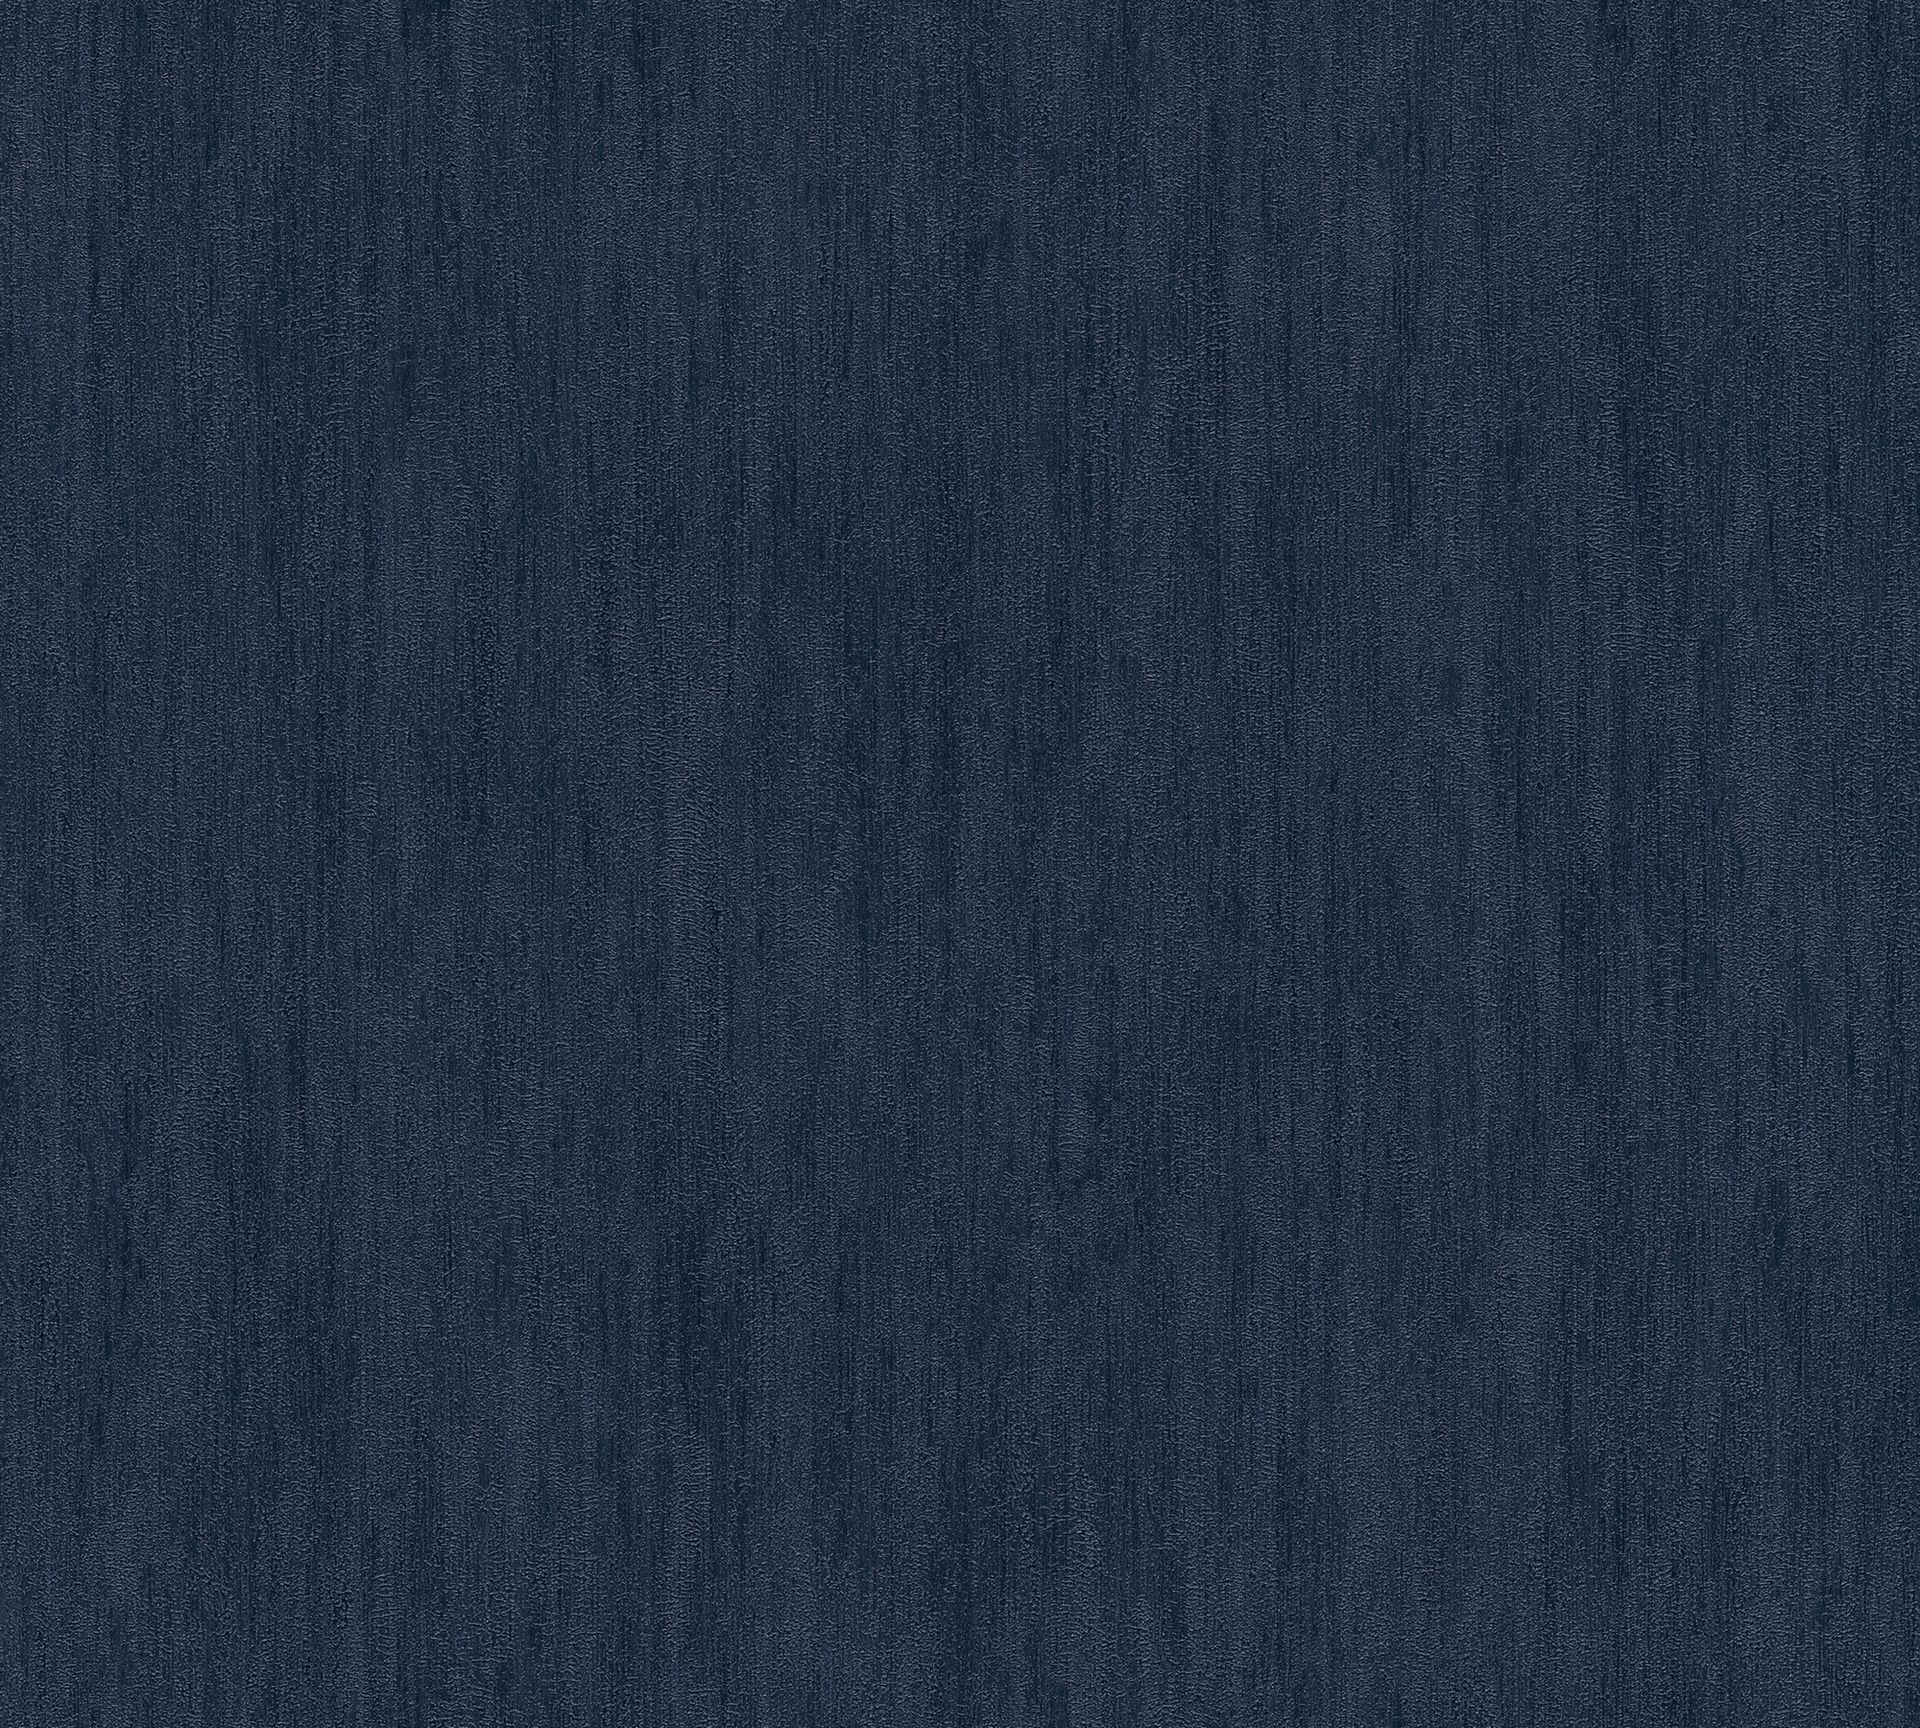 A.S. Création Jette 5, Design Tapete, blau, schwarz 373377